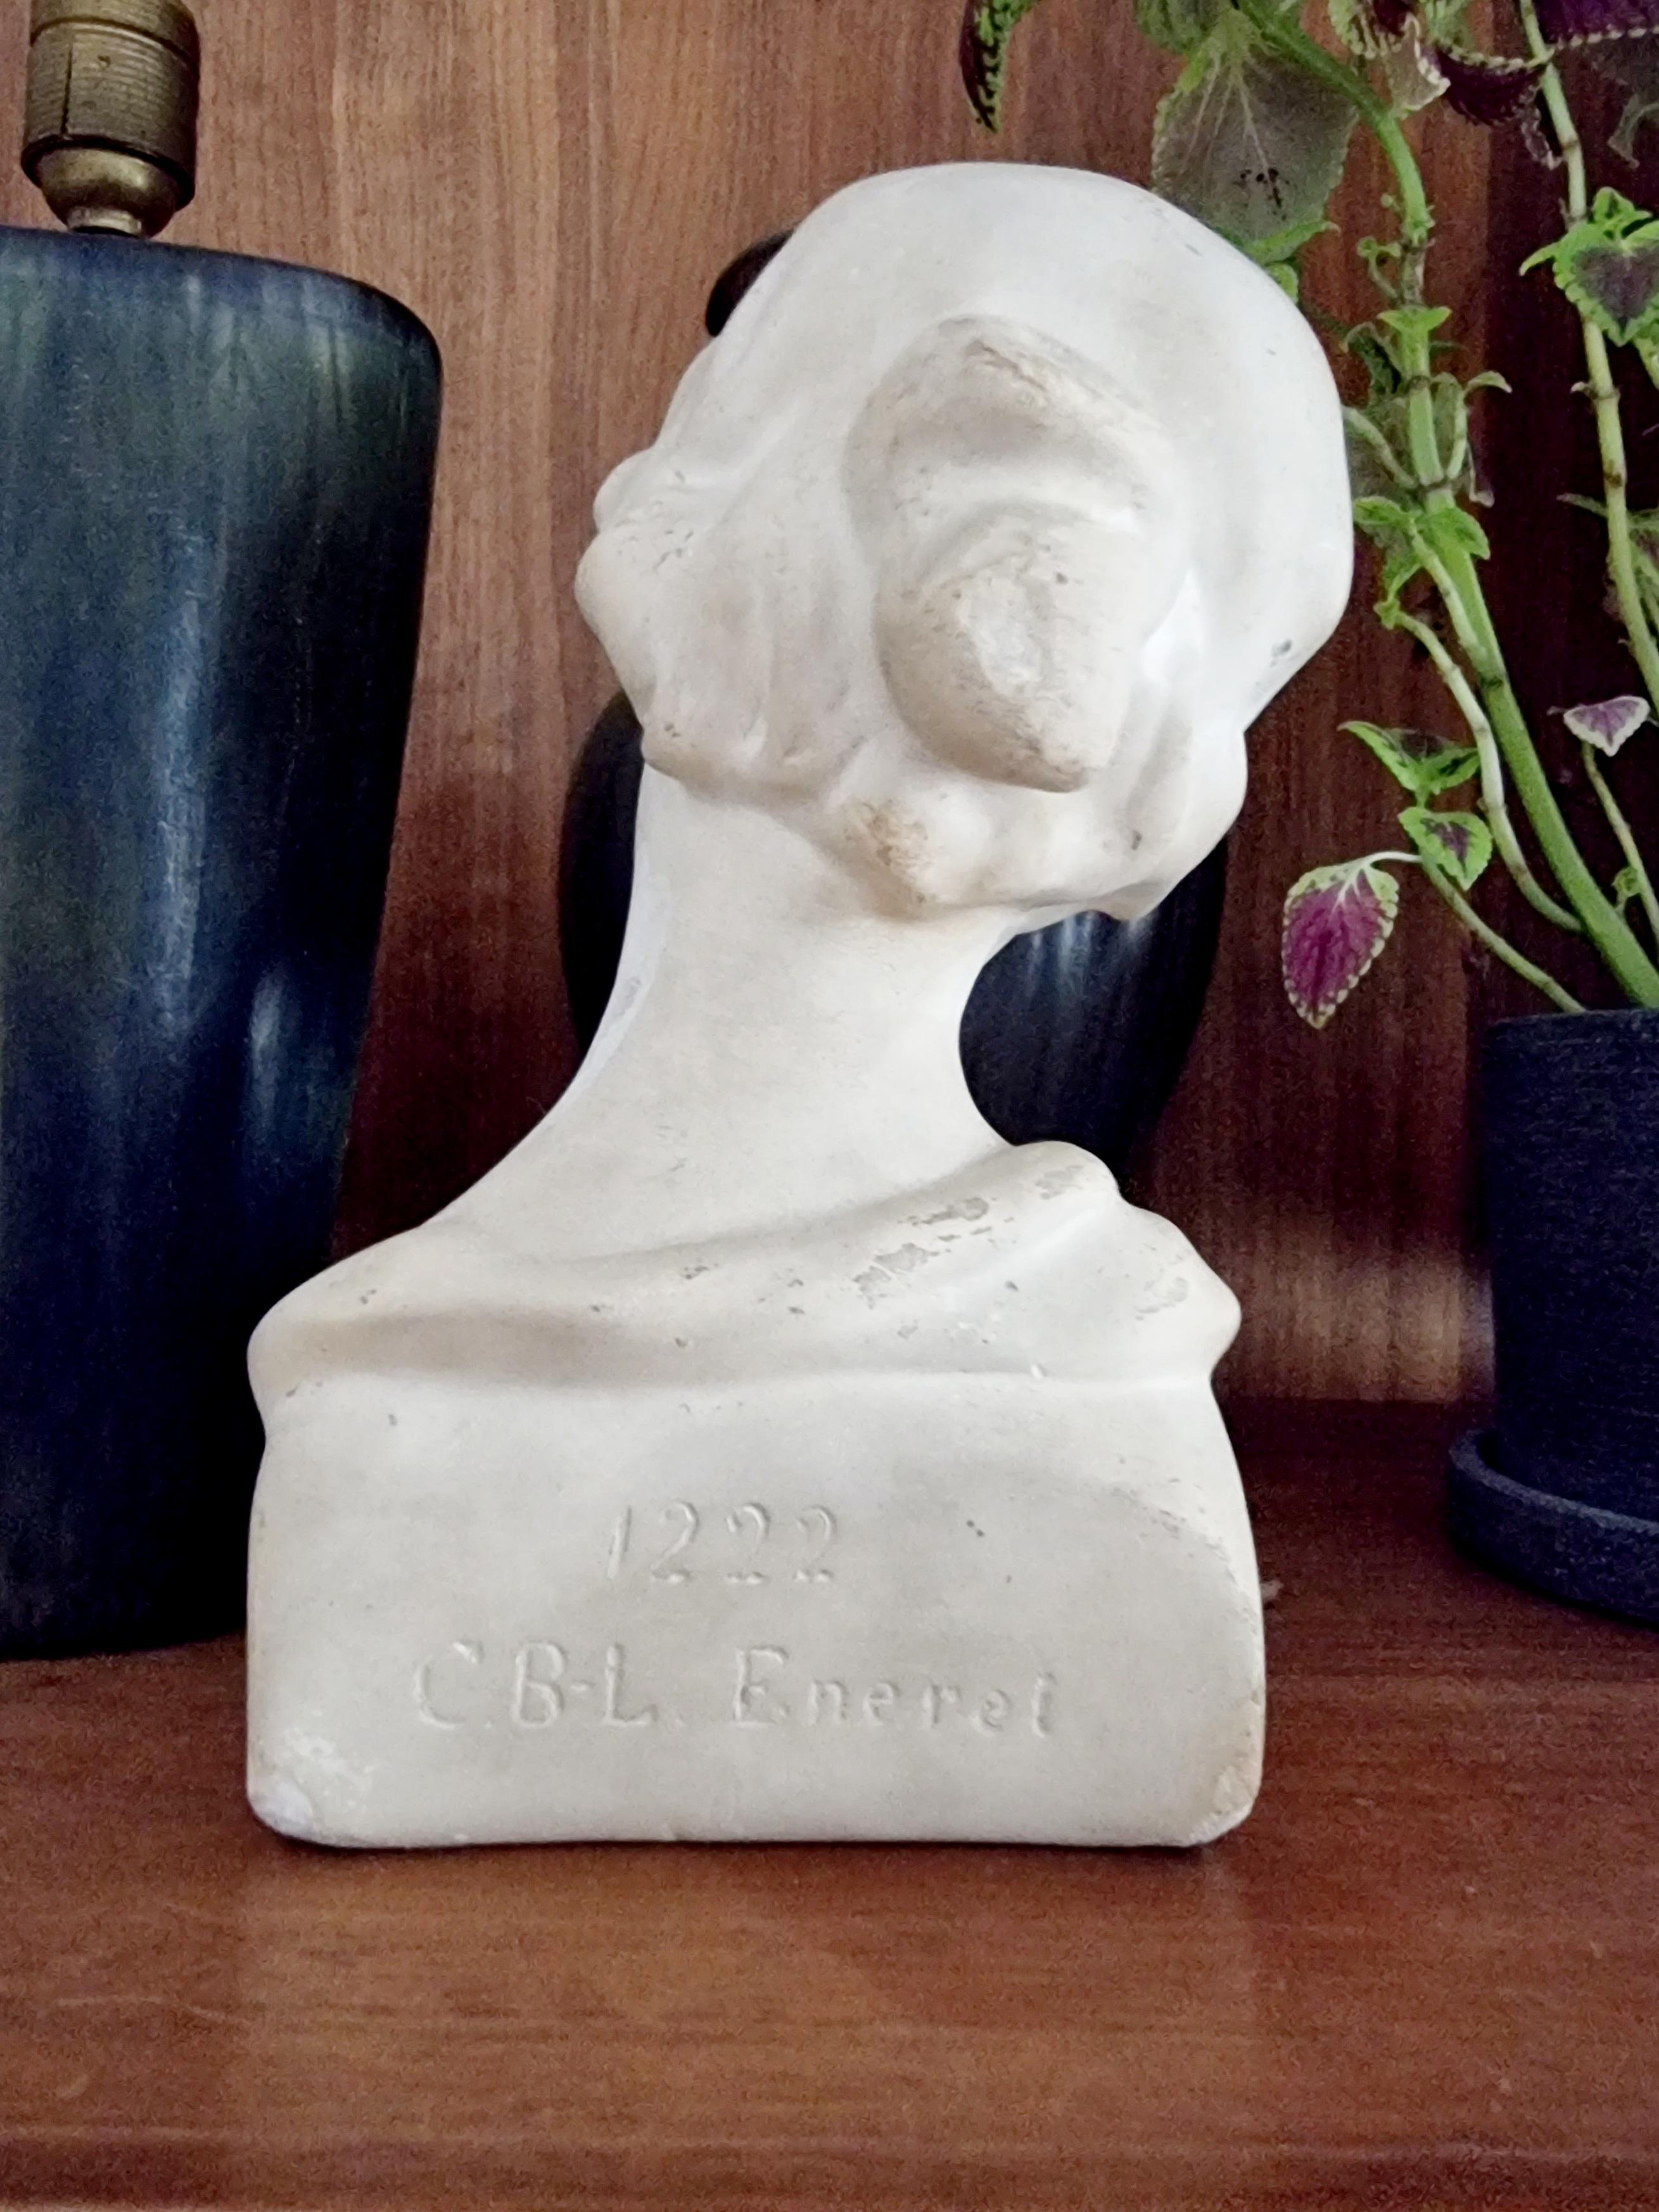 Belle Époque Sculpture / Bust of Young Woman, C B L Eneret